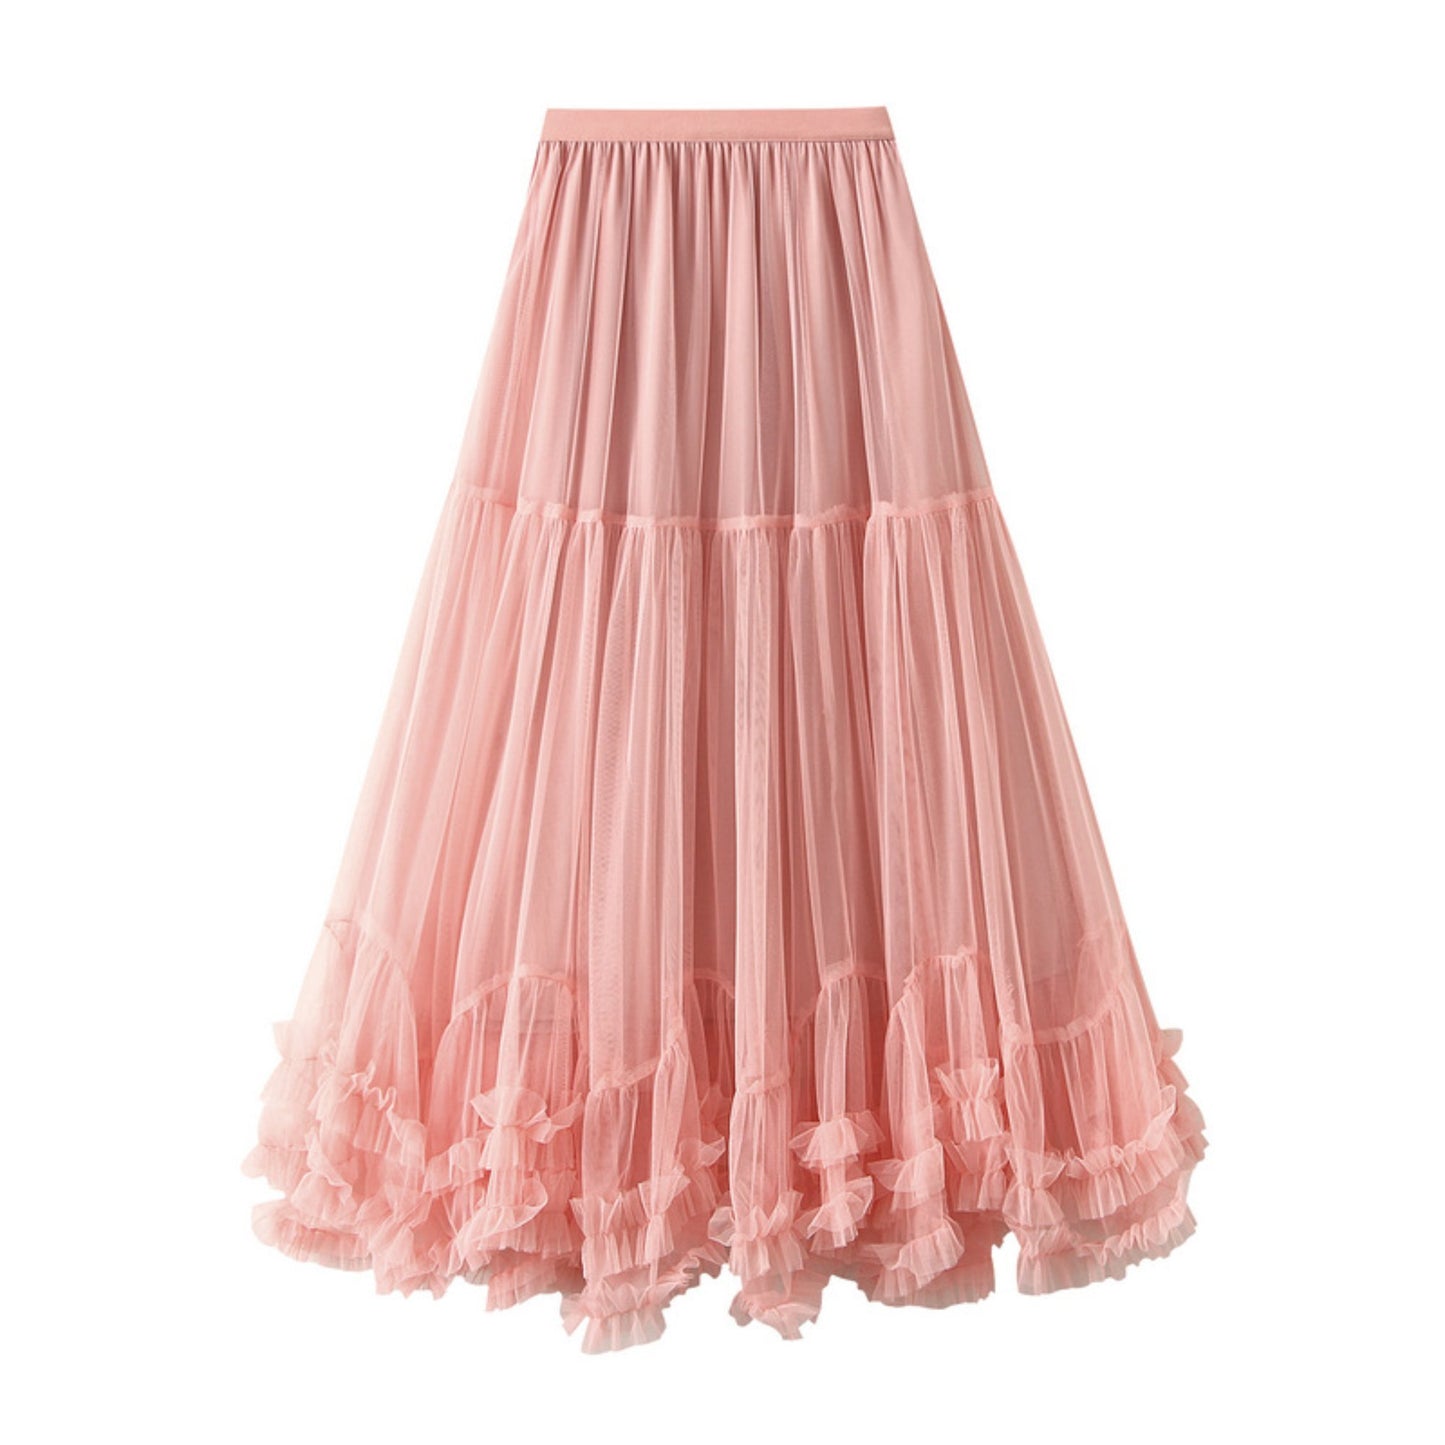 Fairy Mesh Tulle Skirt